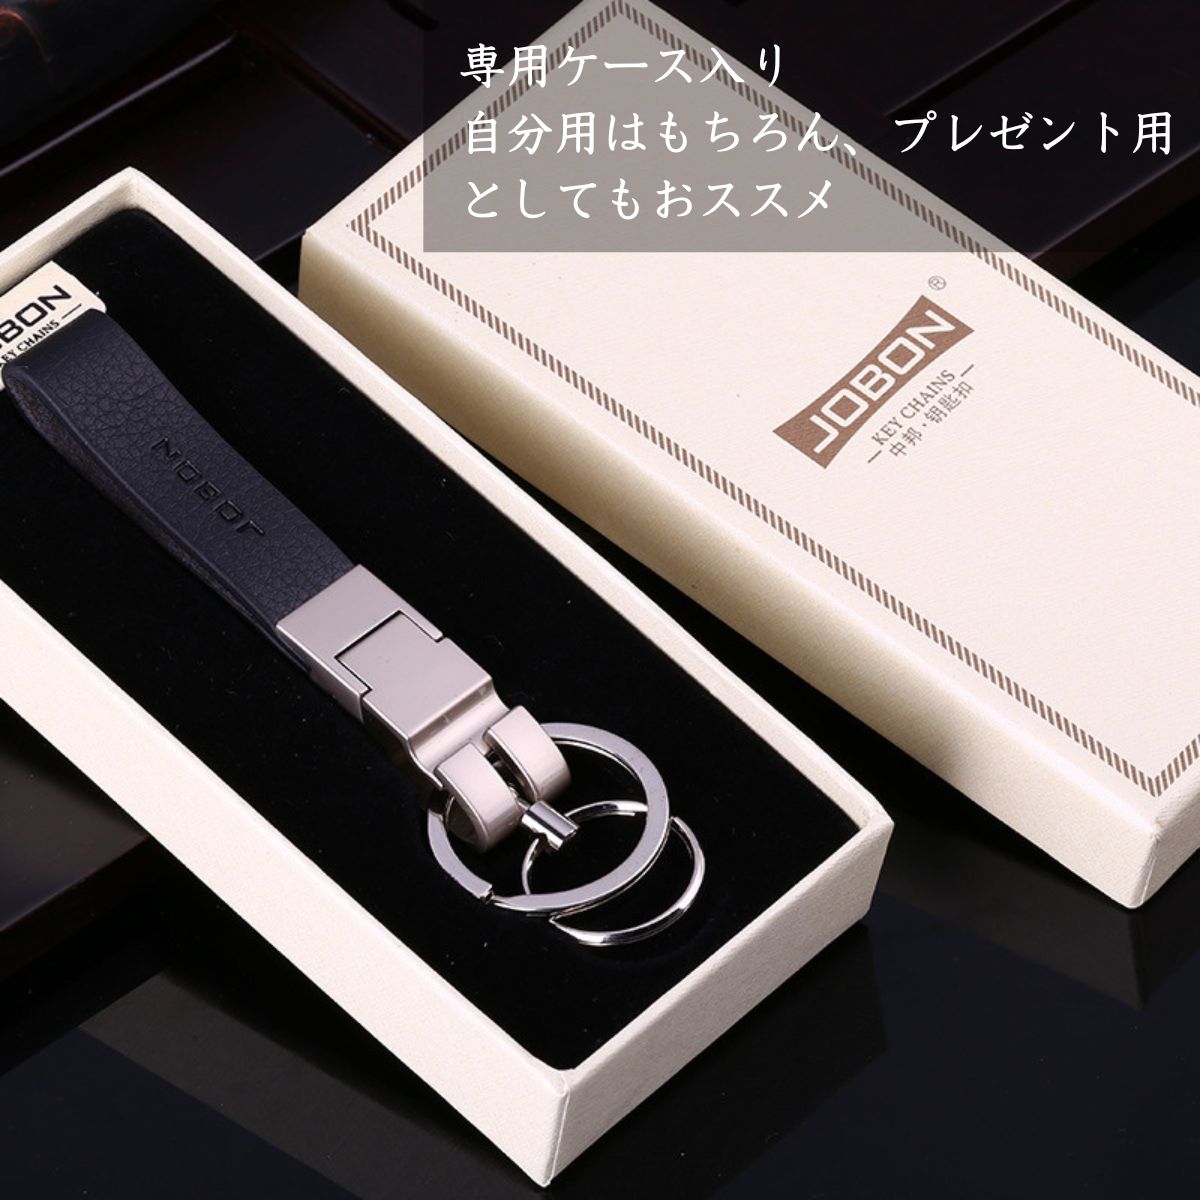  брелок для ключа кожа кольцо для ключей мужской модный крюк машина ключ двойной кольцо металлические принадлежности упаковка соответствует 